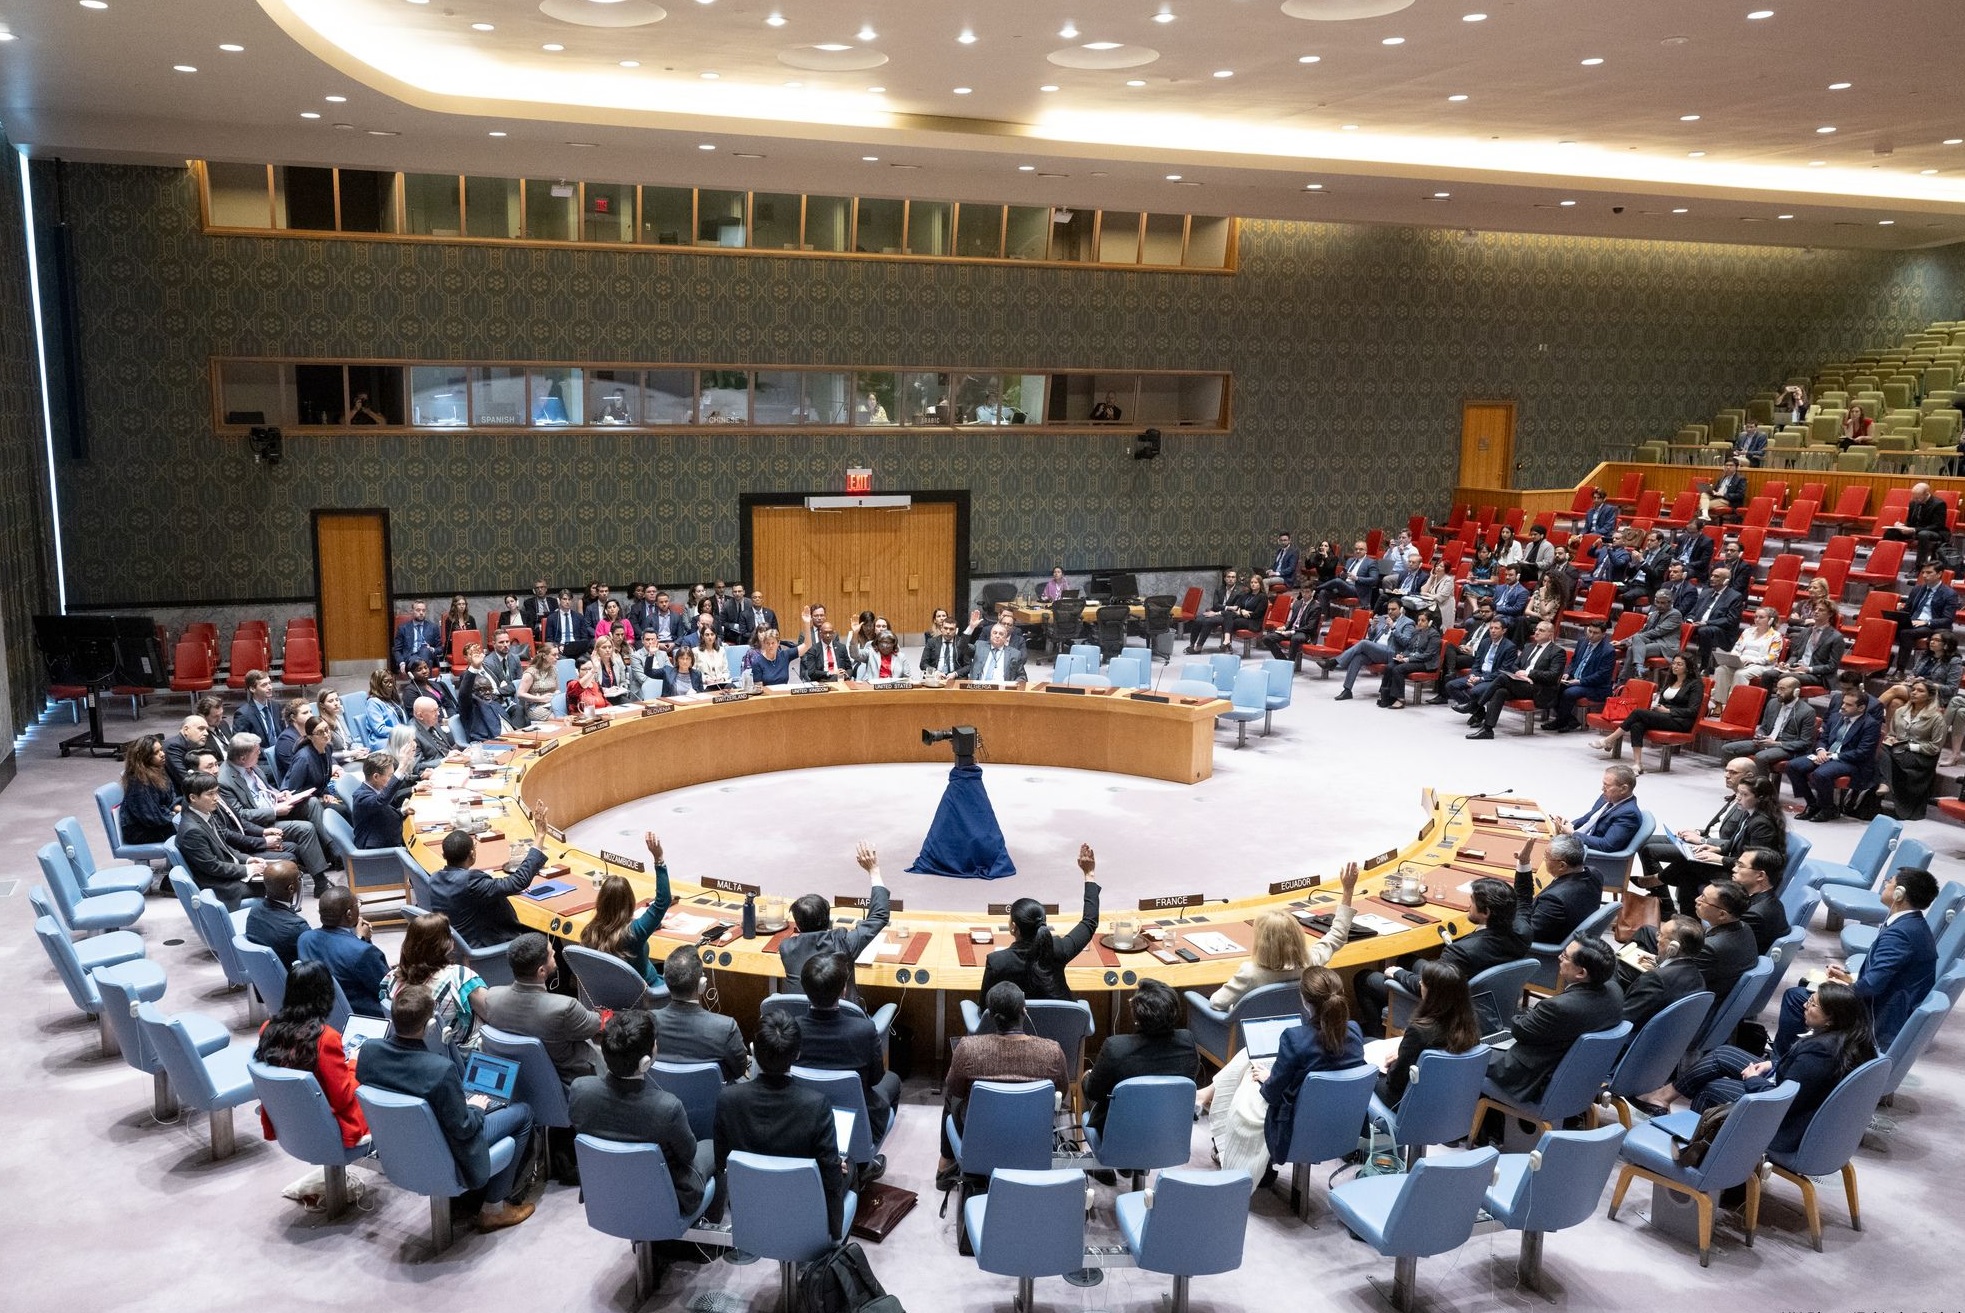 संयुक्त राष्ट्र सुरक्षा परिषद ने गाजा पट्टी में अमेरिका समर्थित संघर्ष विराम प्रस्ताव पारित किया